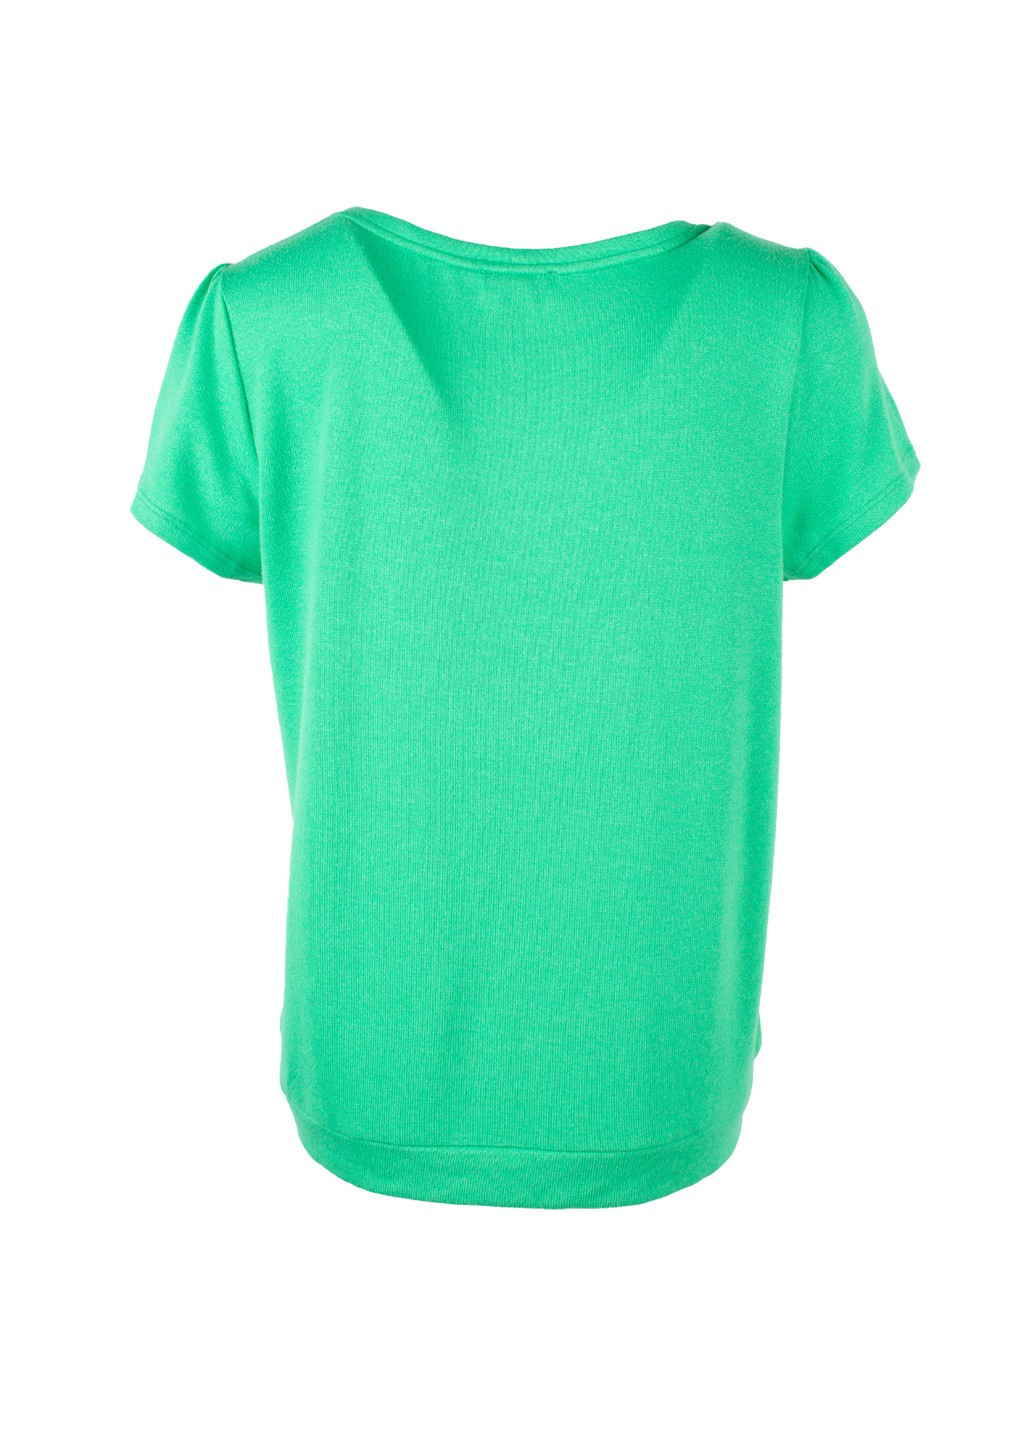 Зелена літня жіноча футболка glowing days зелена Street One